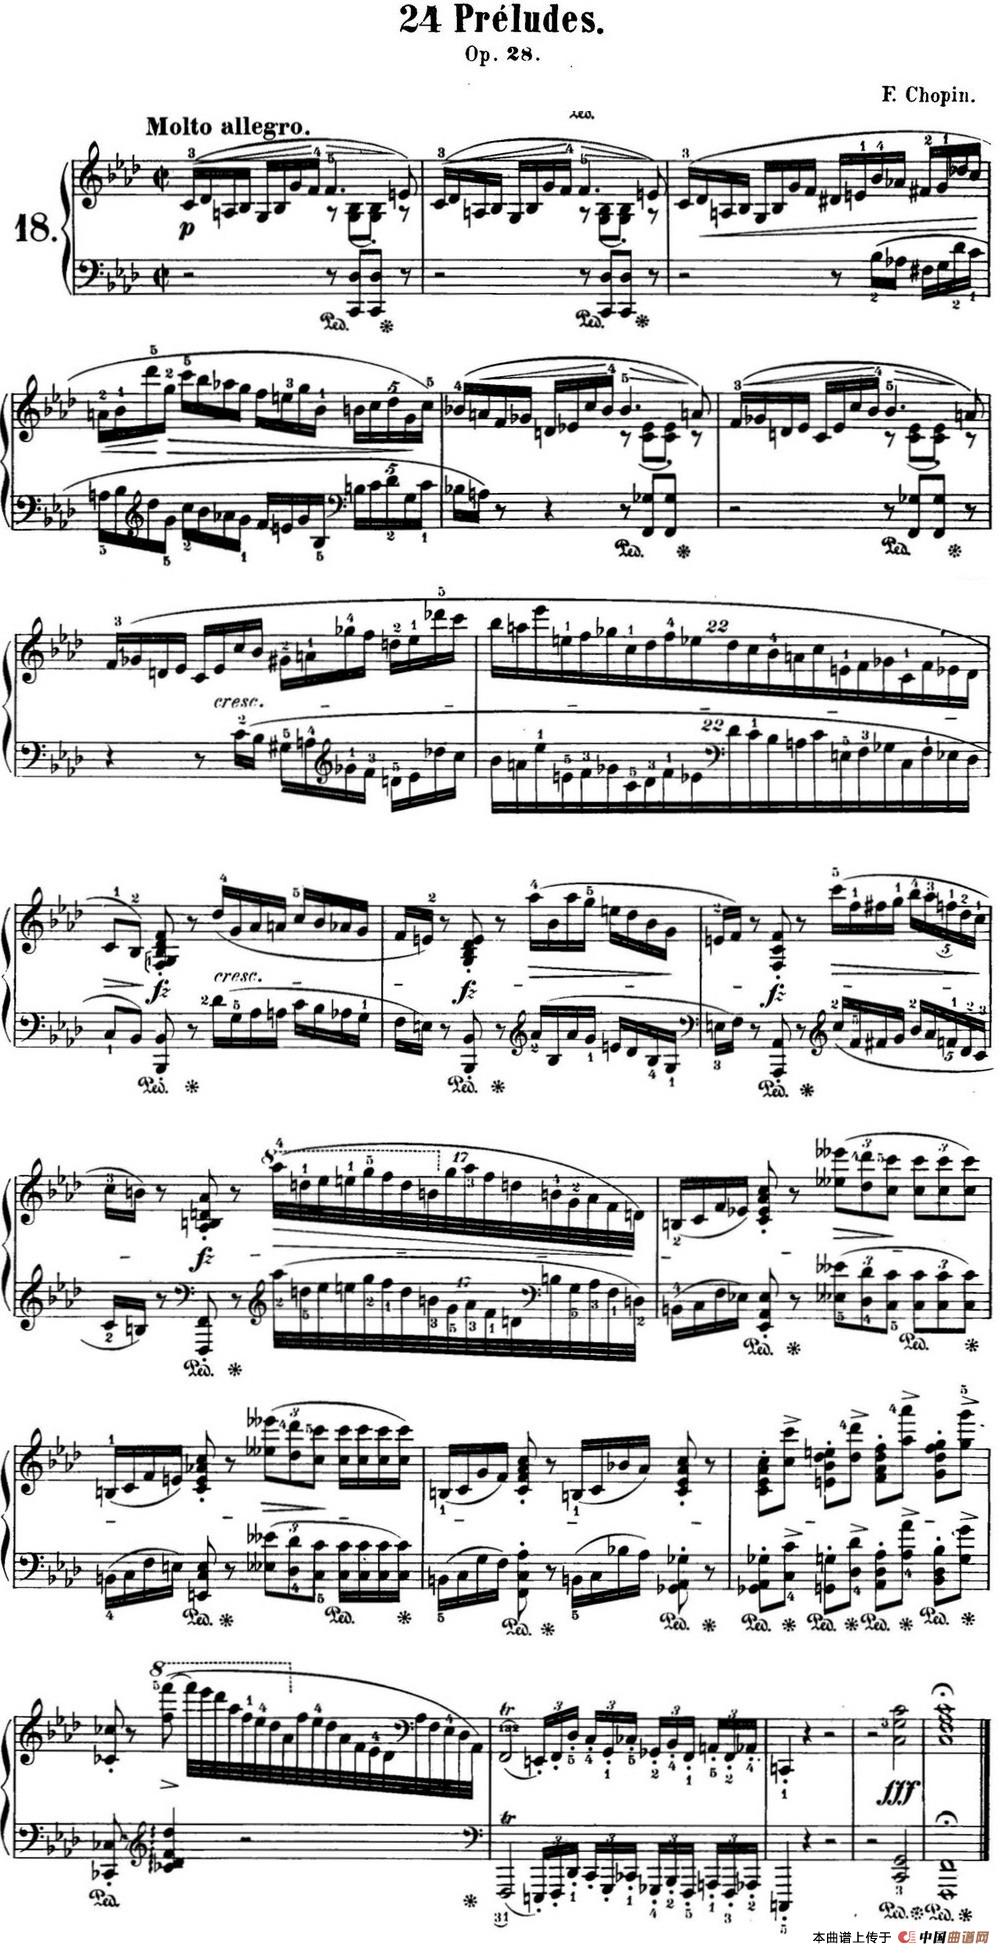 《肖邦 24首钢琴前奏曲 Op.28 No.18 F小调》钢琴曲谱图分享